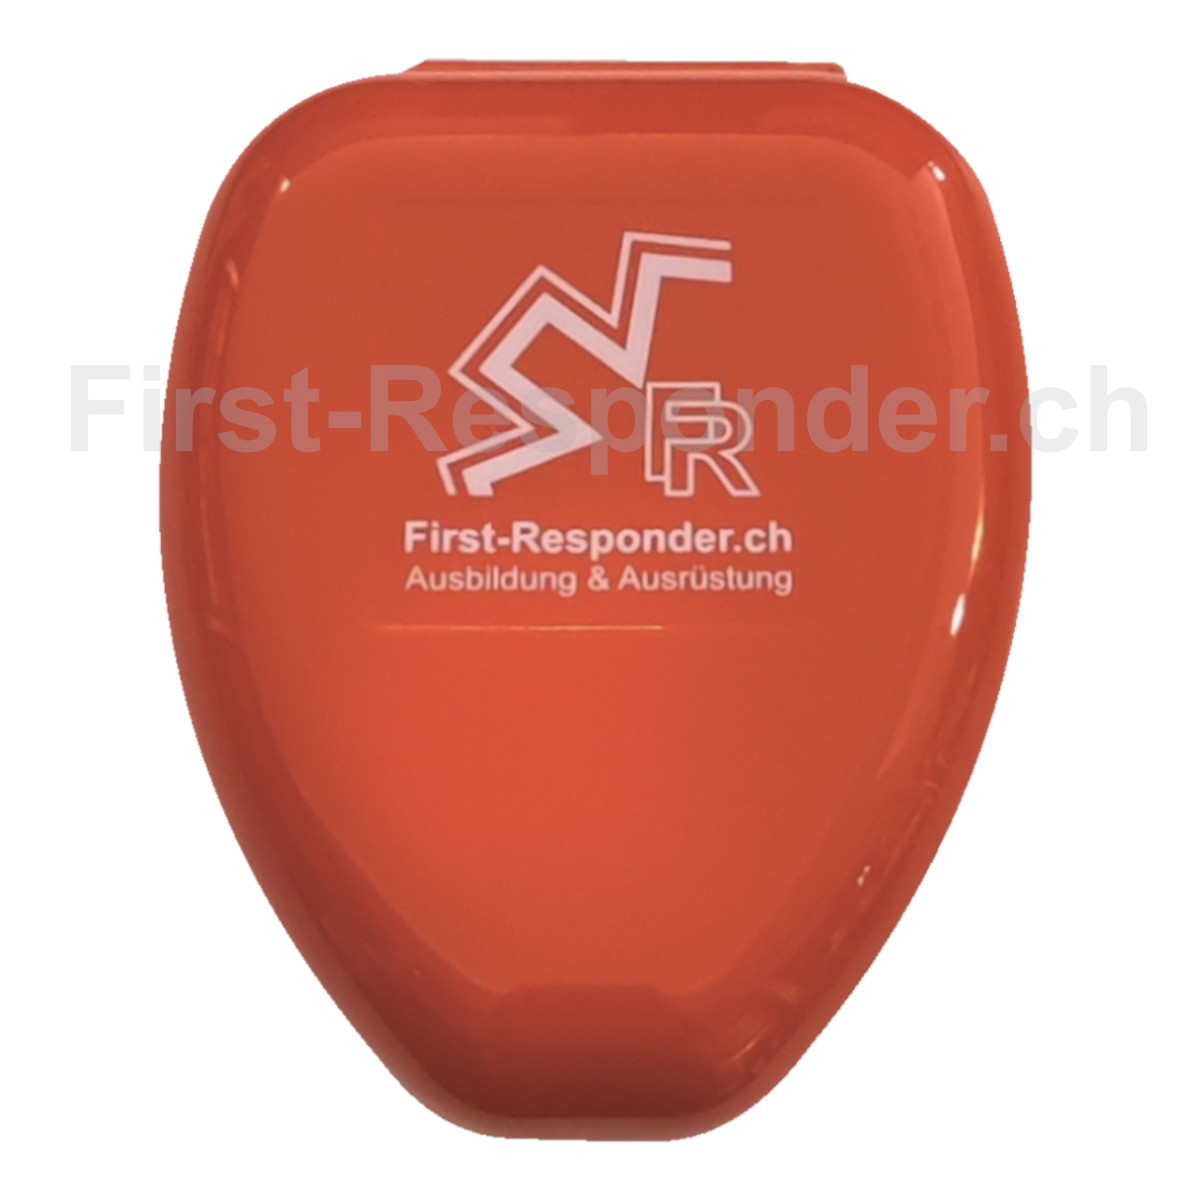 Beatmungsmaske, Taschenmaske - First Responder